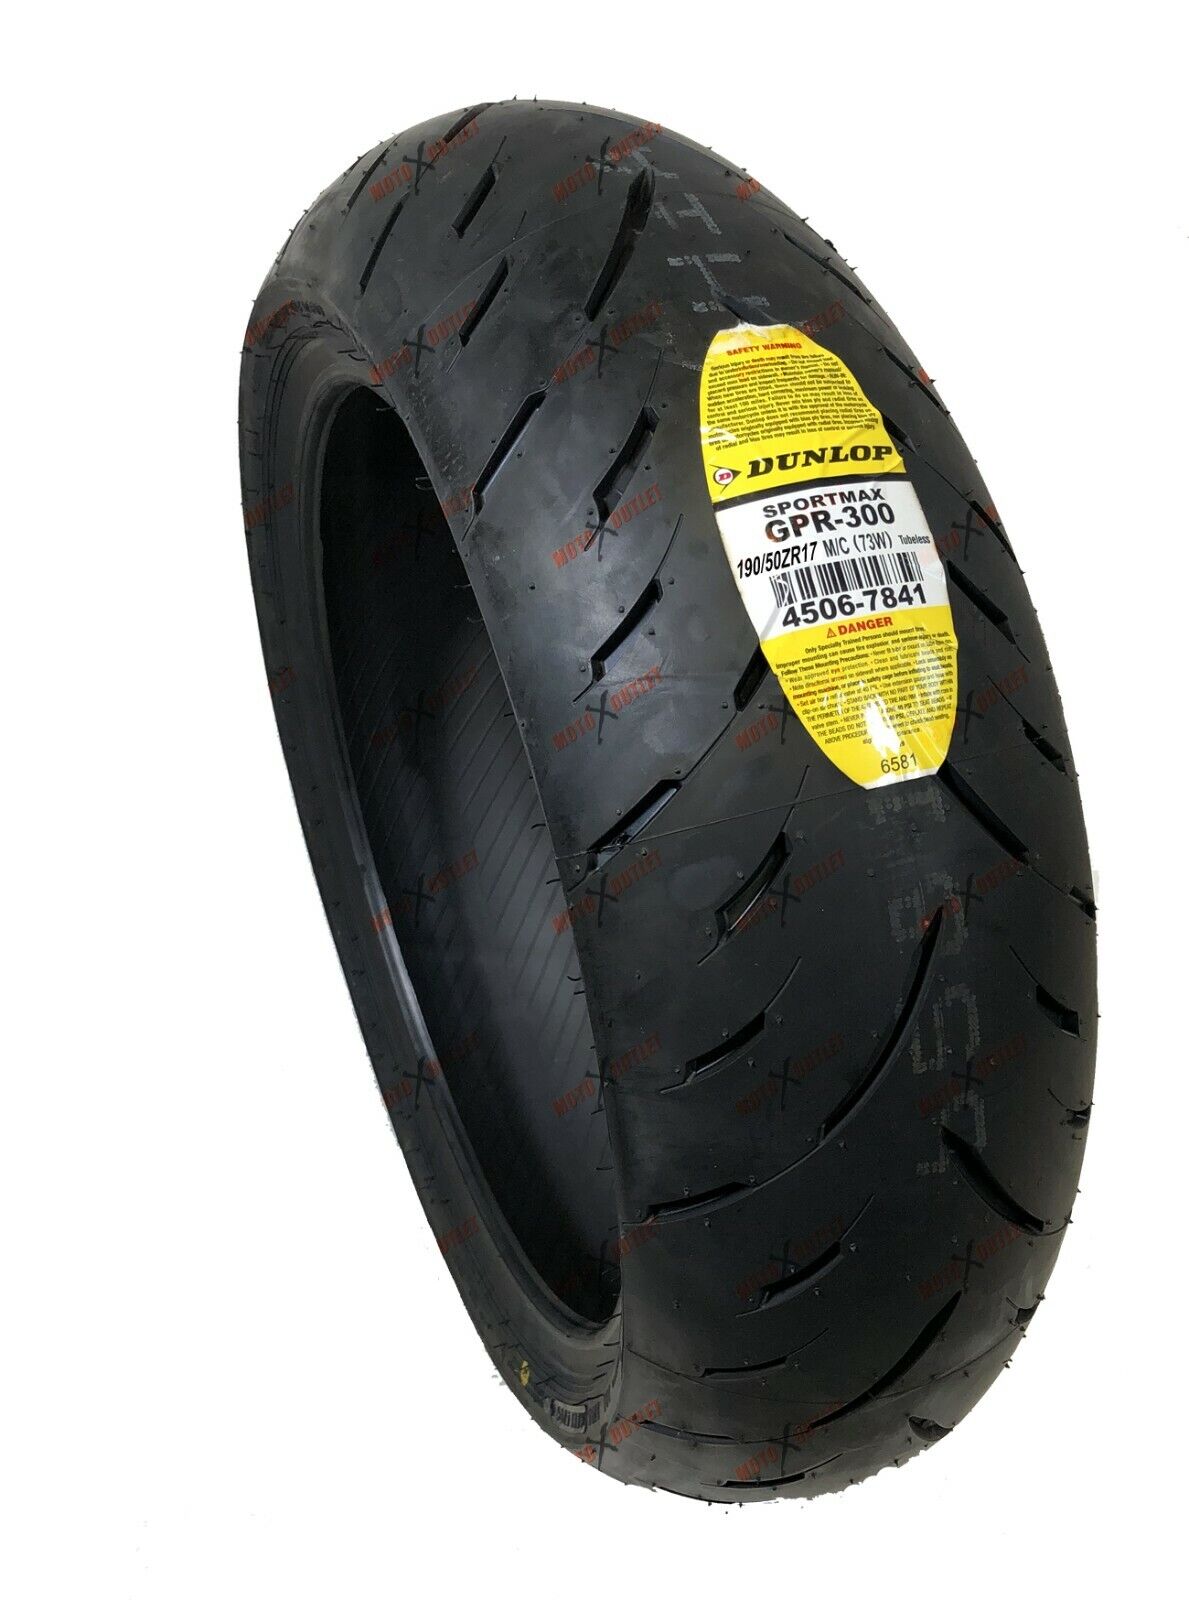 Dunlop Sportmax 190/50ZR17 GPR 300 190 50 17 Rear Motorcycle tire 45067841